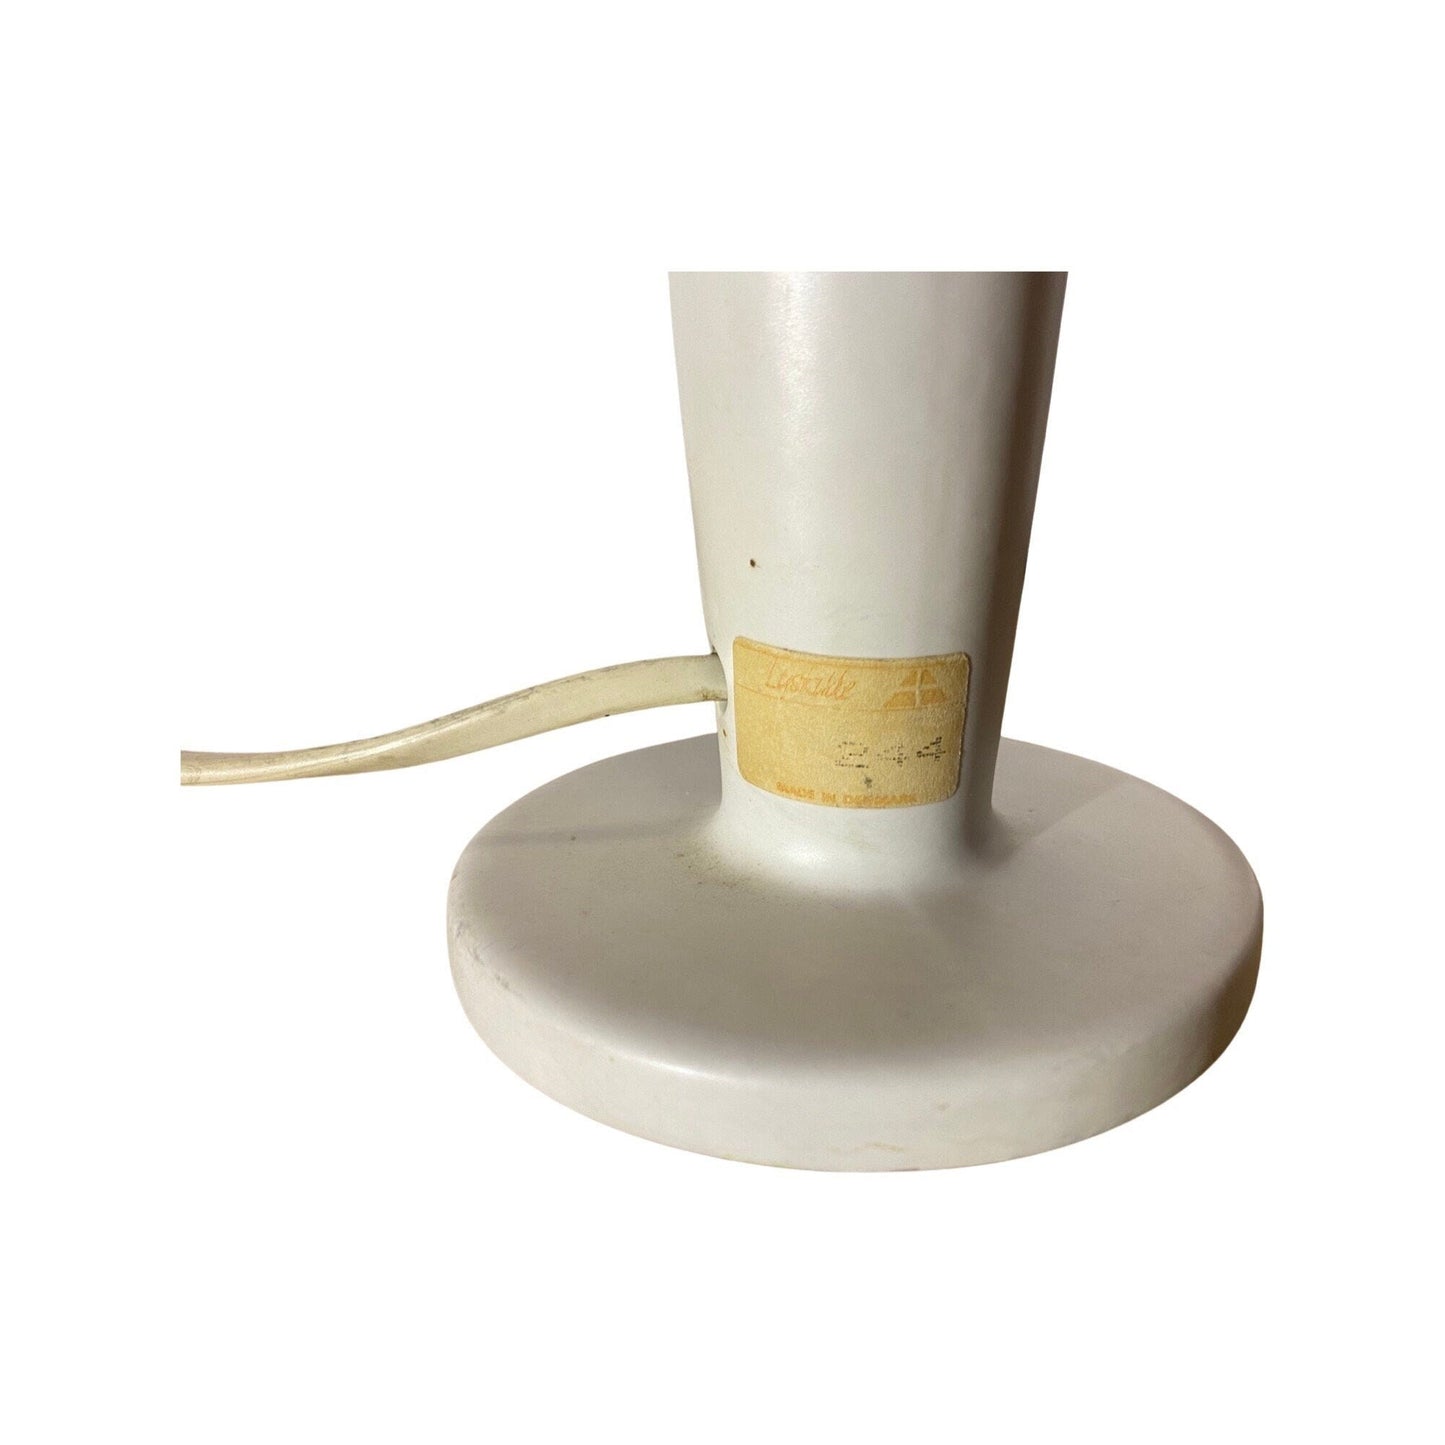 60s Ceramic/Brass Table Light From LYSKILDE Denmark | Vintage LYSKILDE Designer Table Lamp With White Ceramic Base & Brass Neck | White/Gold